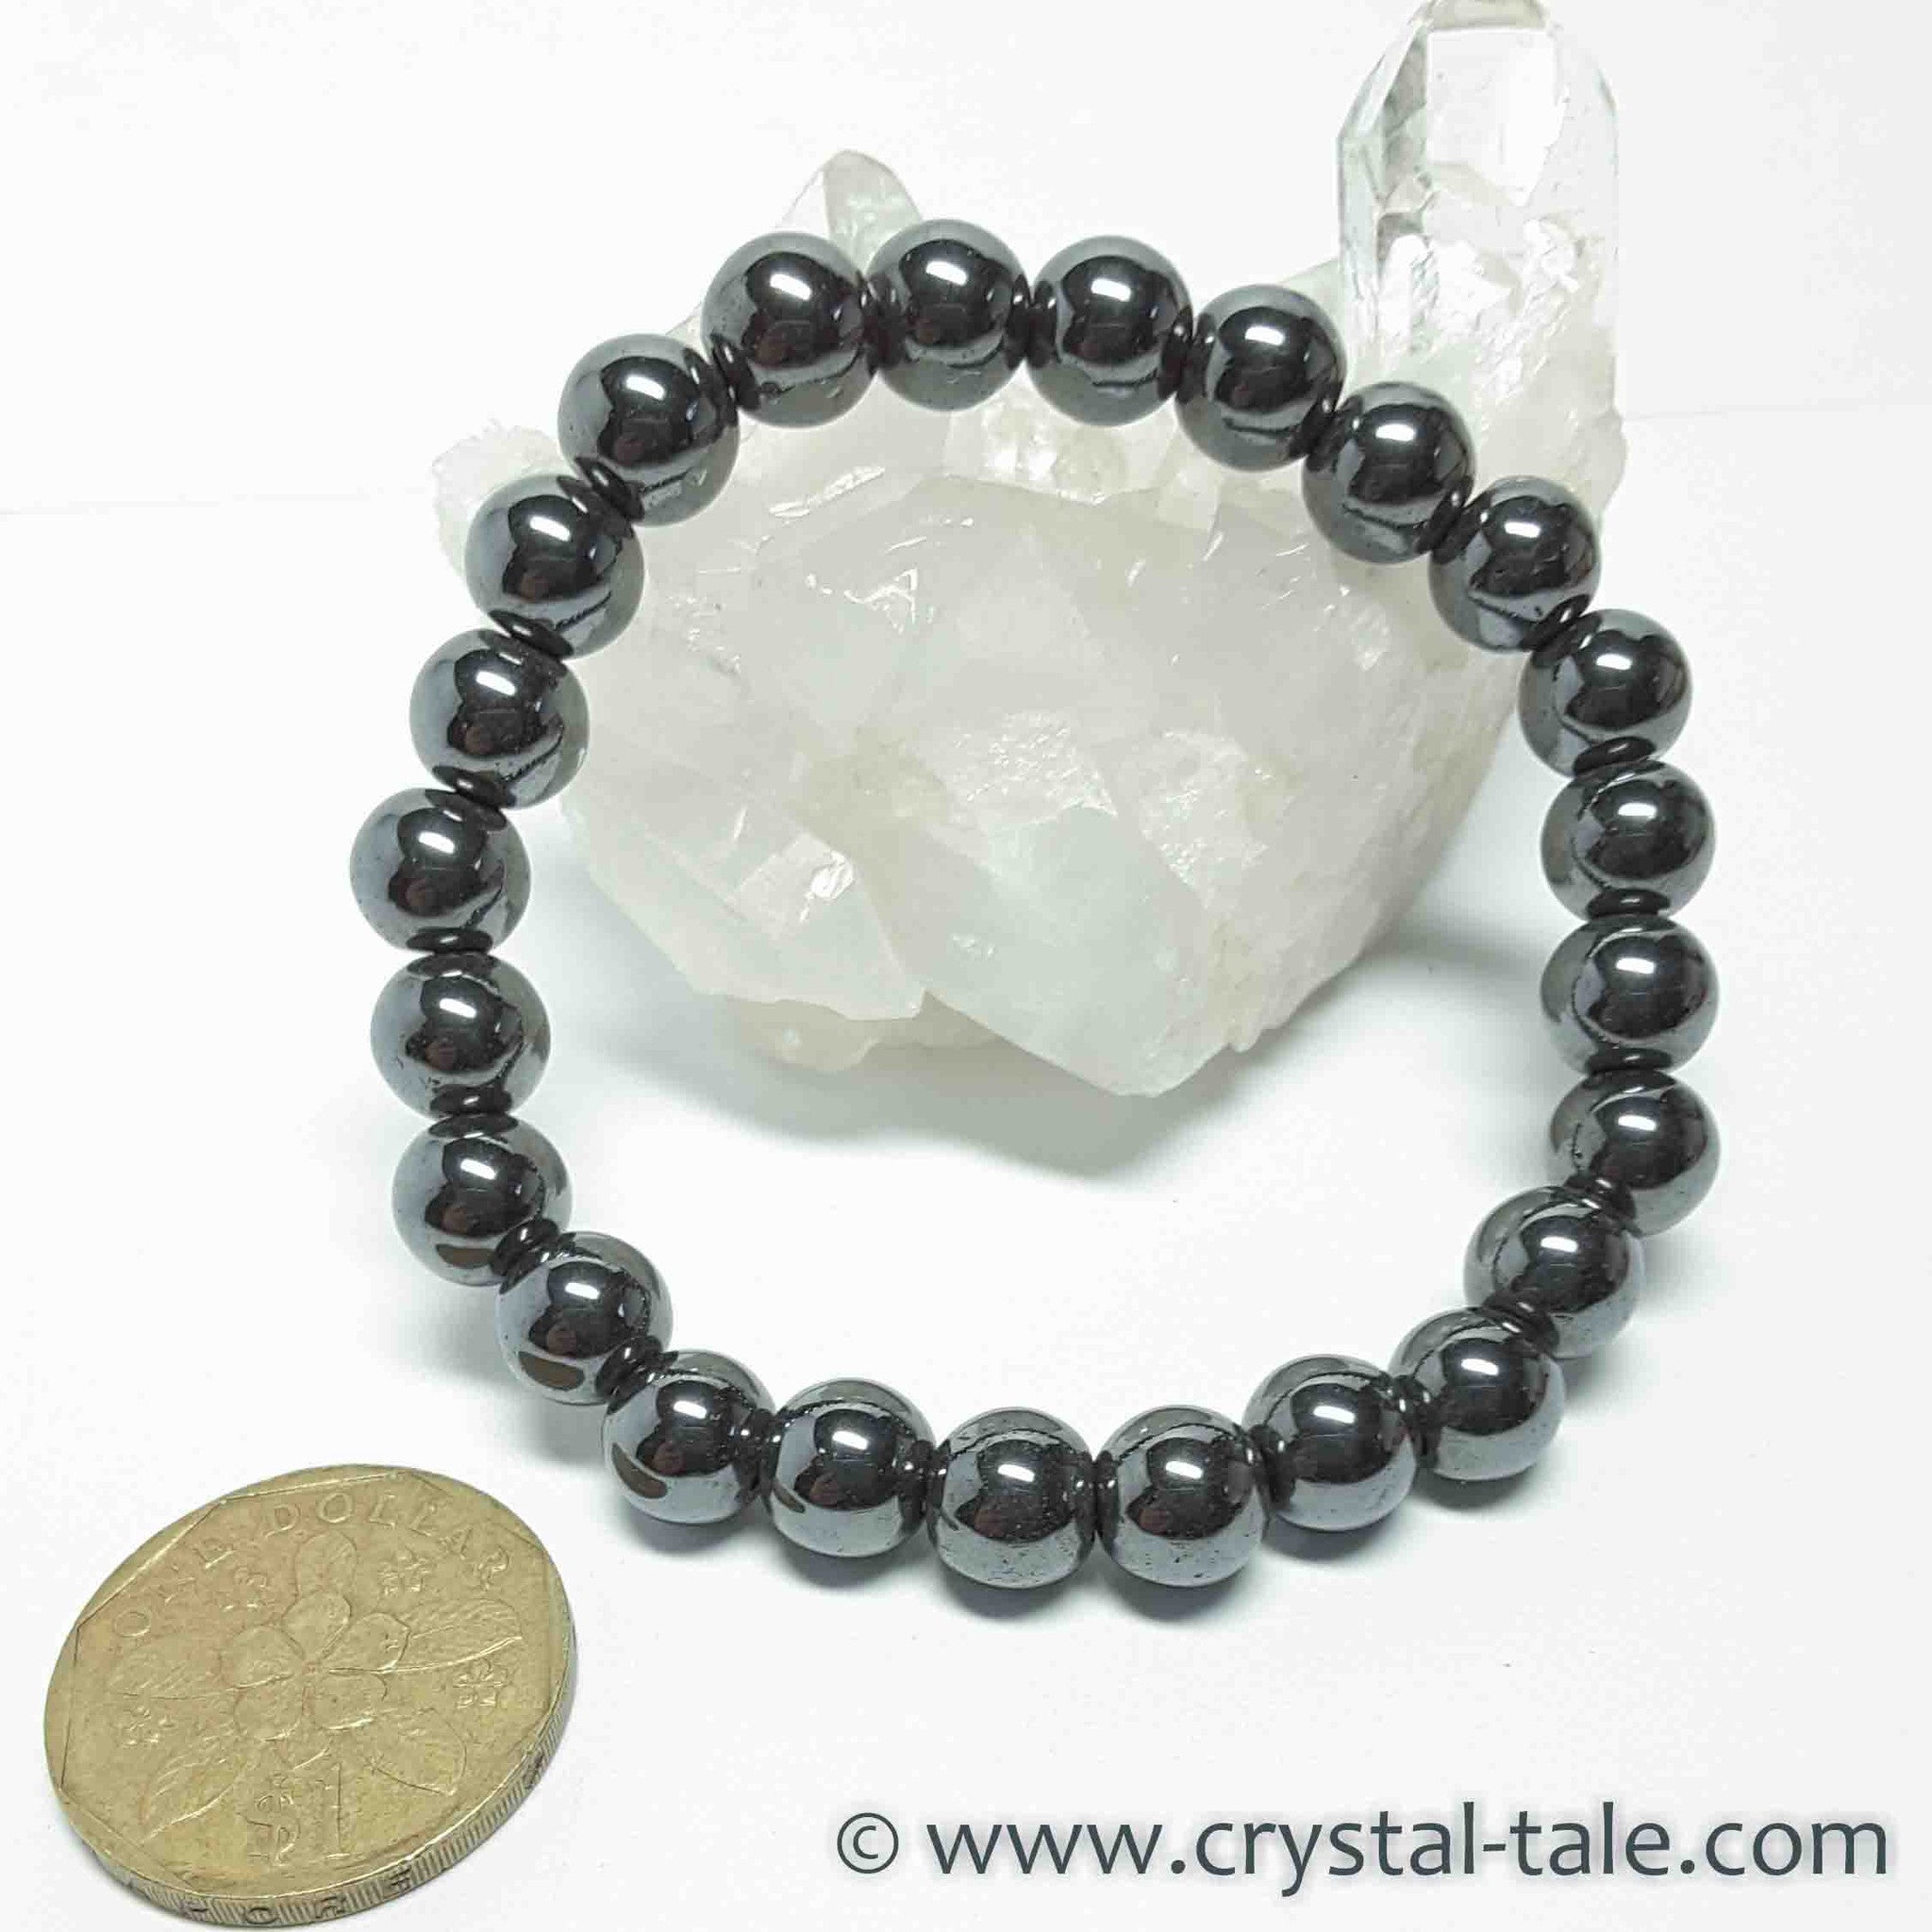 Buy Rose quartz Bracelet For Girls & Boys by CEYLONMINE Online - Get 68% Off